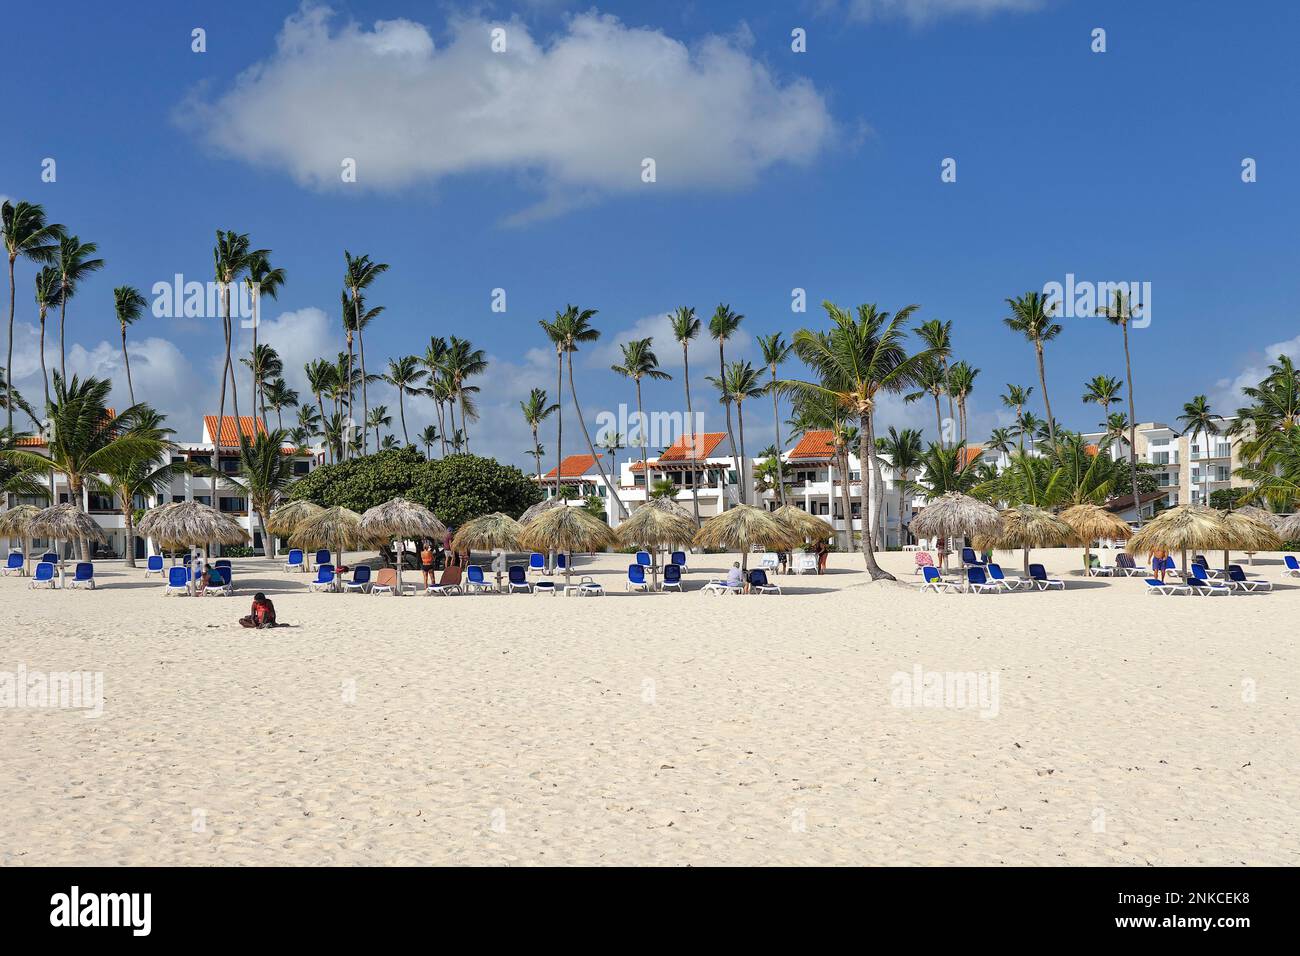 Resort con sombrillas de hoja de palma, Playa Los Corales Bávaro, Punta Cana, República Dominicana, Caribe, América Central Foto de stock